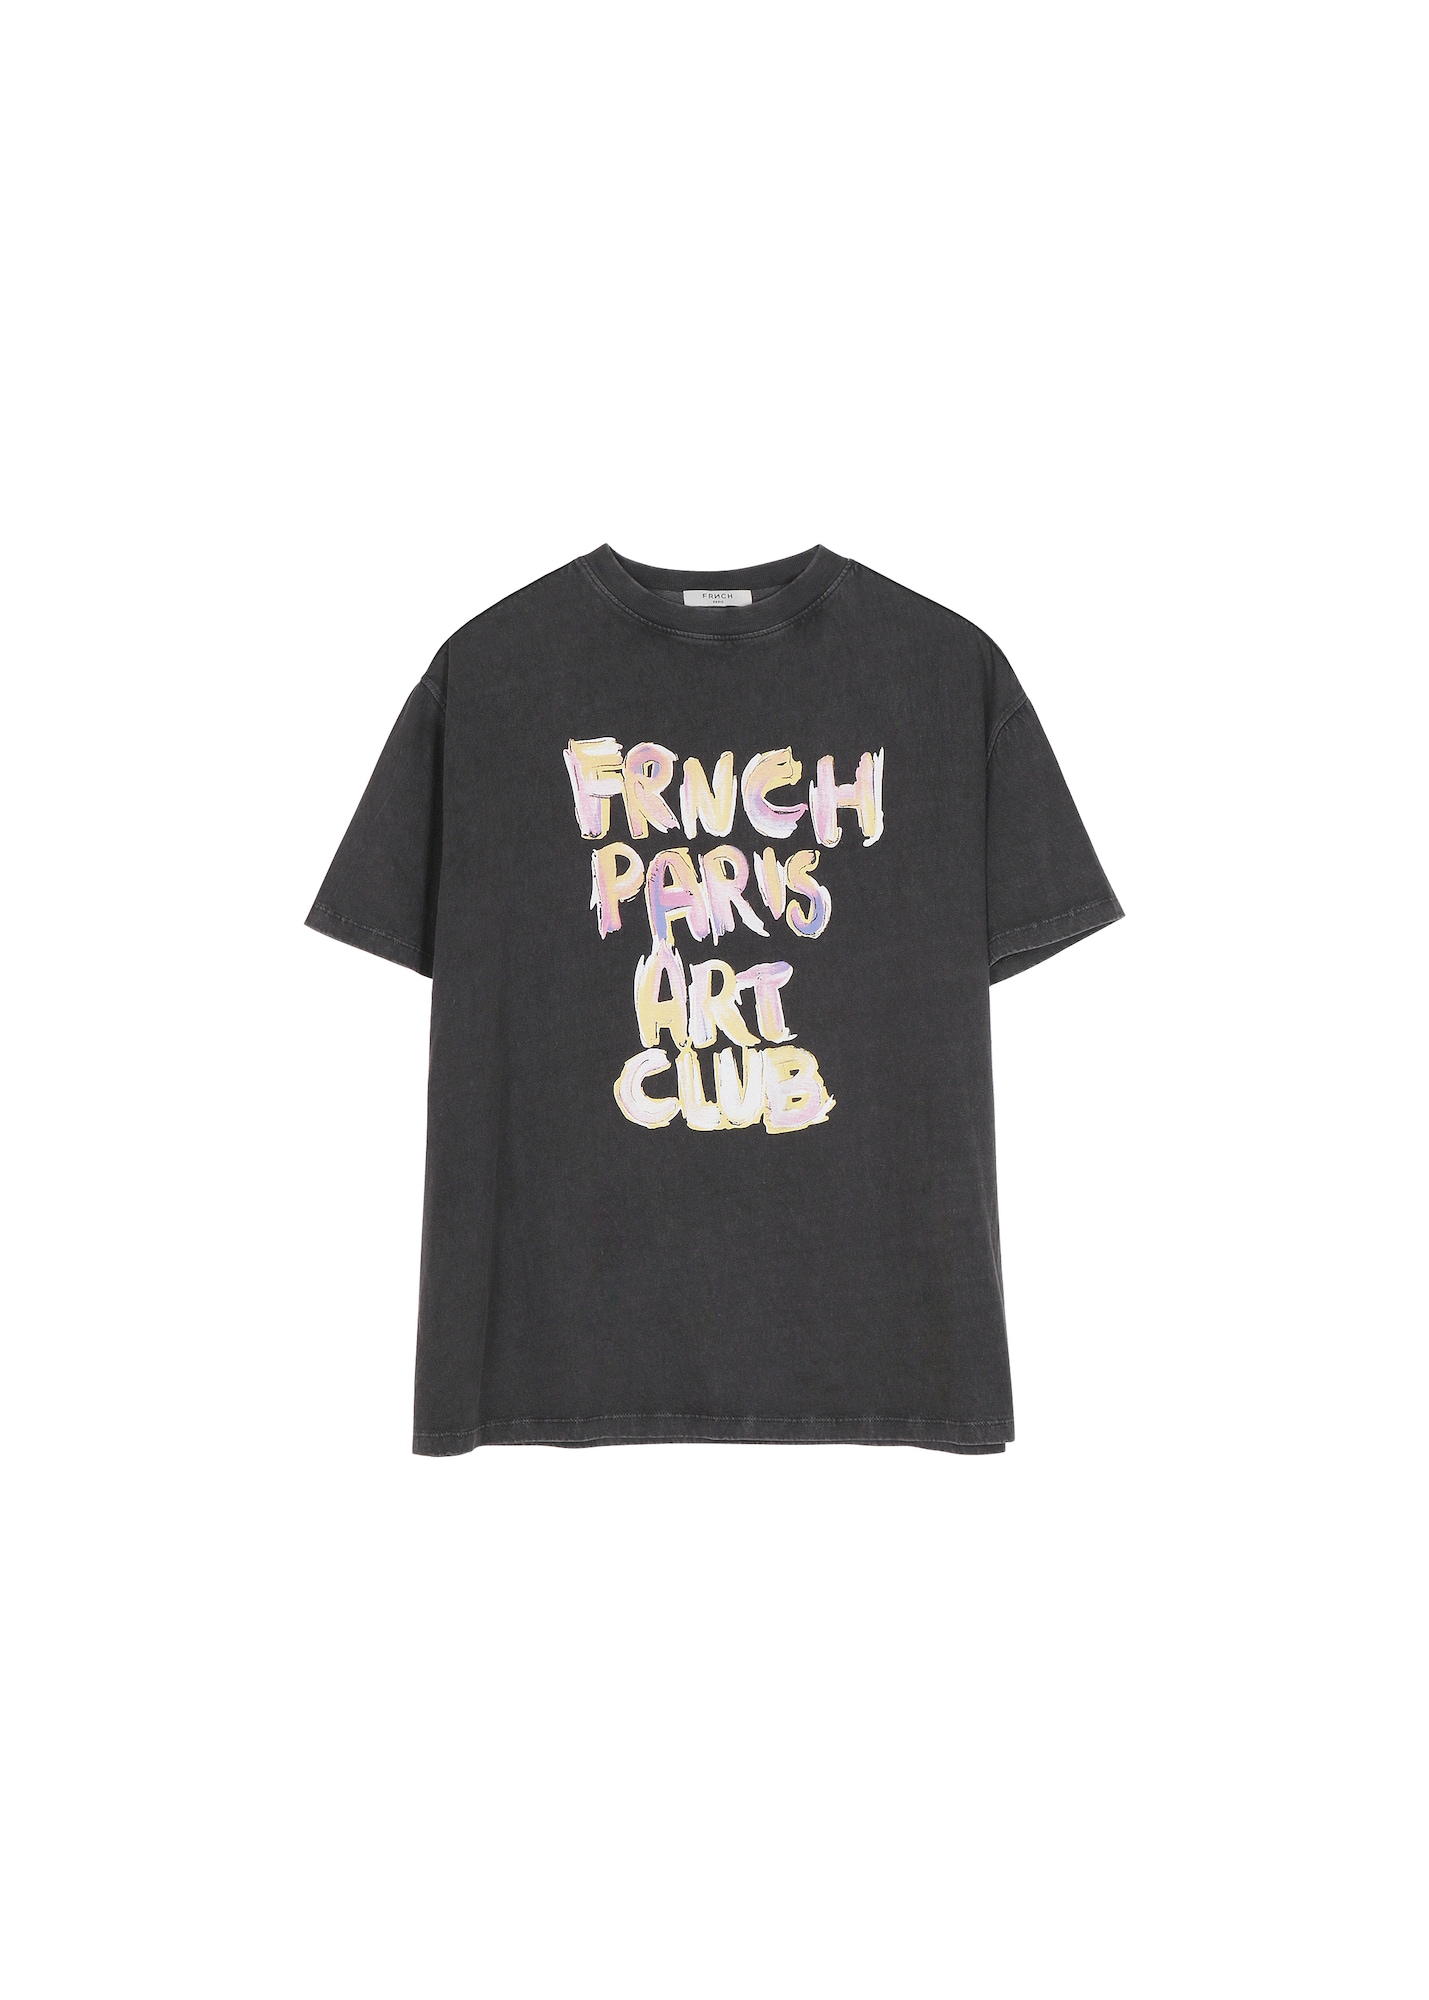 FRNCH PARIS Marškinėliai 'Art' pastelinė geltona / antracito spalva / alyvinė spalva / balta